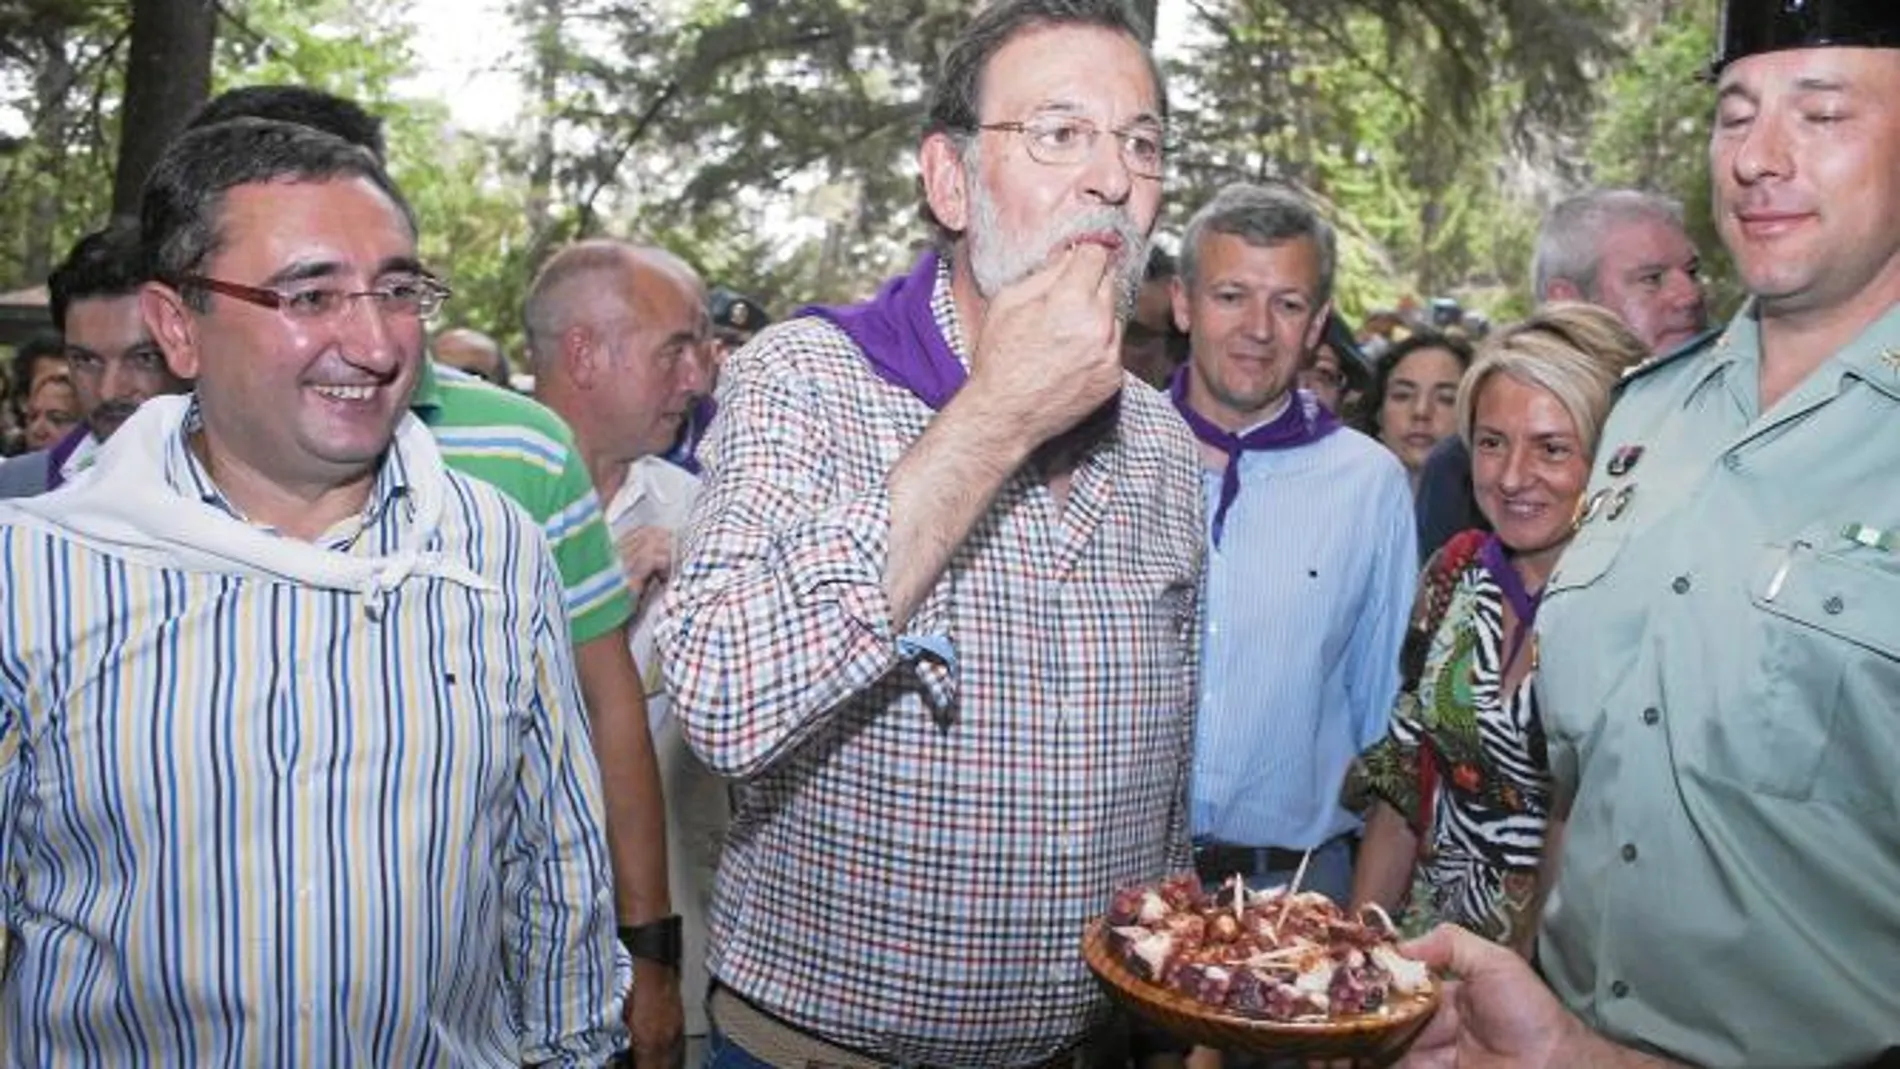 En la localidad orensana de O Carballiño, Mariano Rajoy vivió los primeros años de su infancia. Y para rememorar viejos tiempos, el líder del PP acudió a la edición número 49 de la Fiesta del Pulpo. En la imagen, Rajoy degusta una tapa de pulpo a la galle